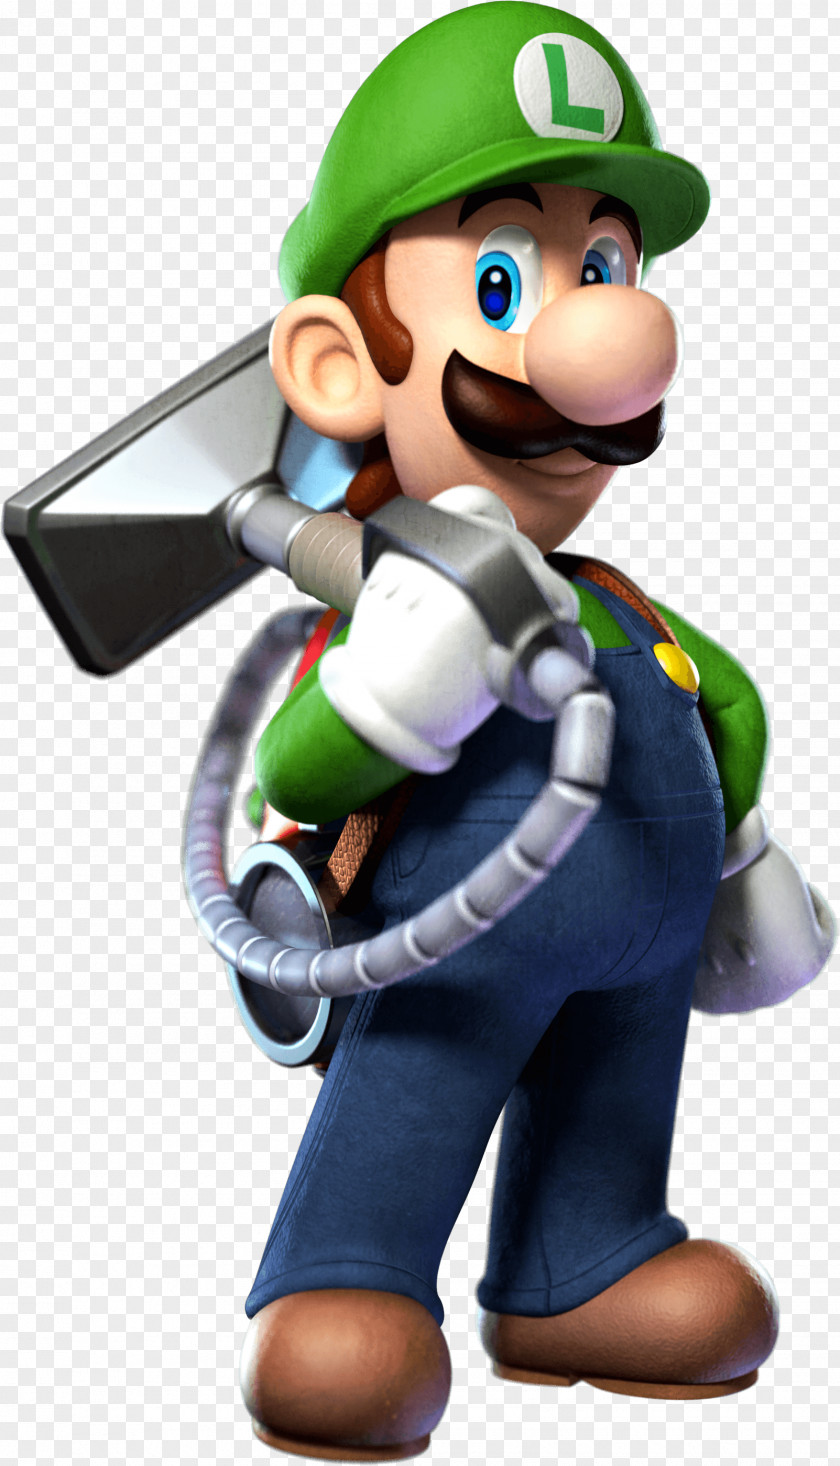 Luigi Luigi's Mansion 2 New Super Mario Bros. U Smash For Nintendo 3DS And Wii PNG